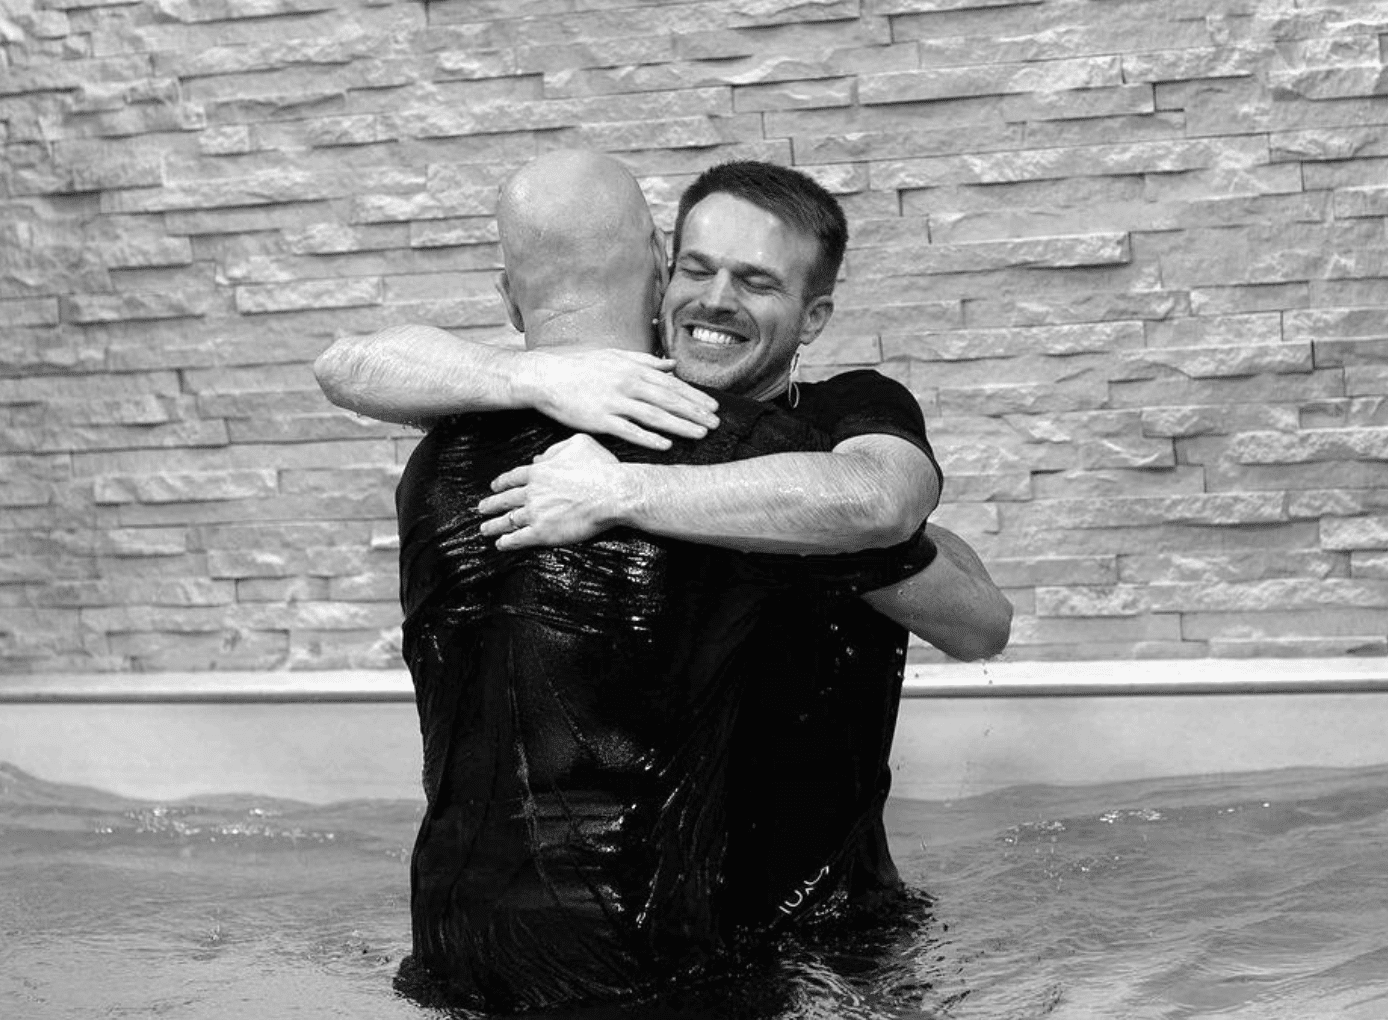 United City Humble baptisms